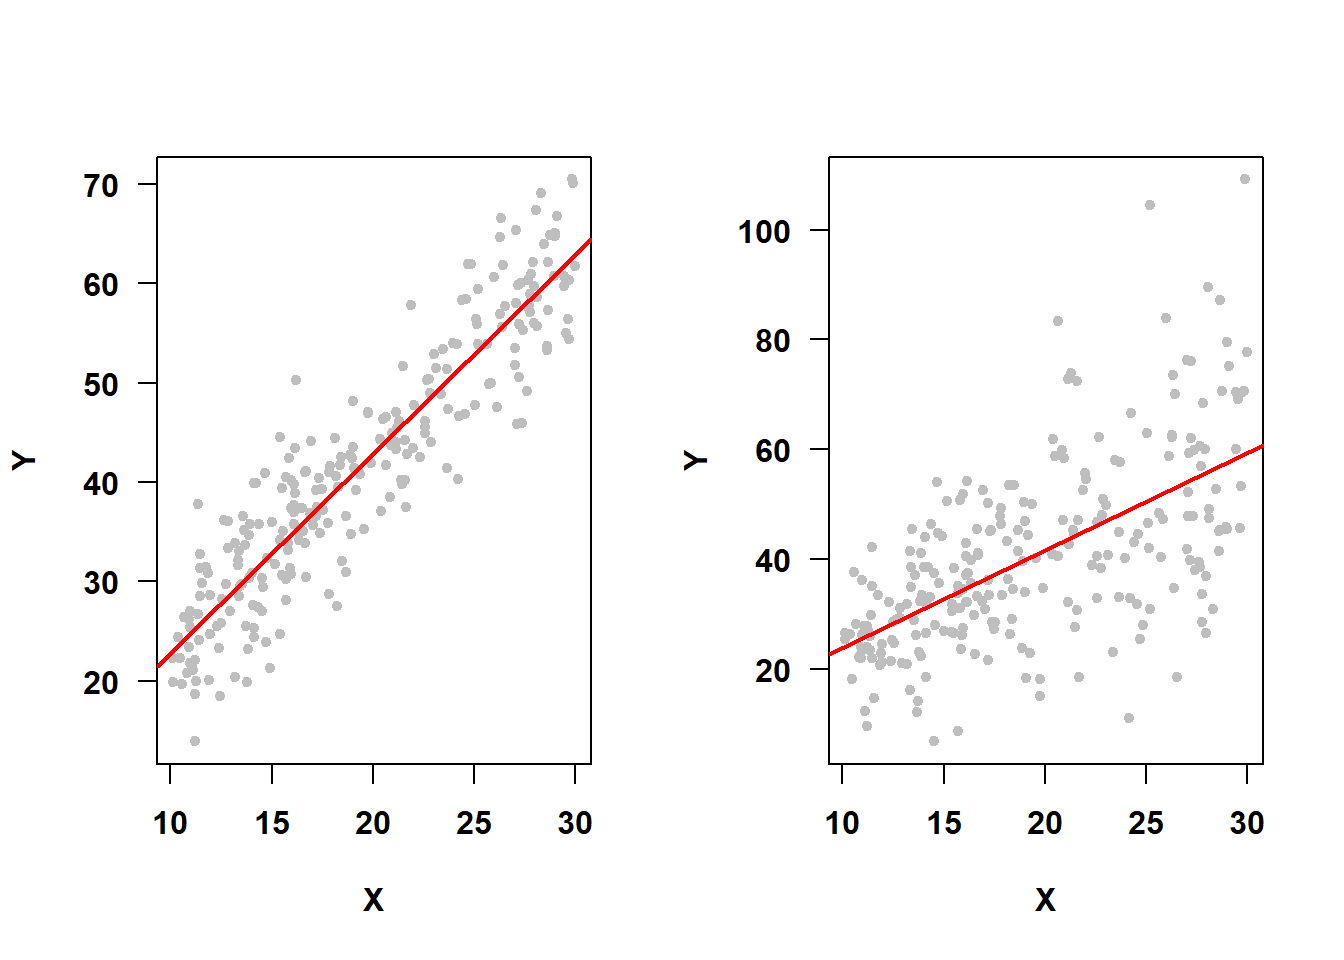 Constant variance assumption met vs. not met